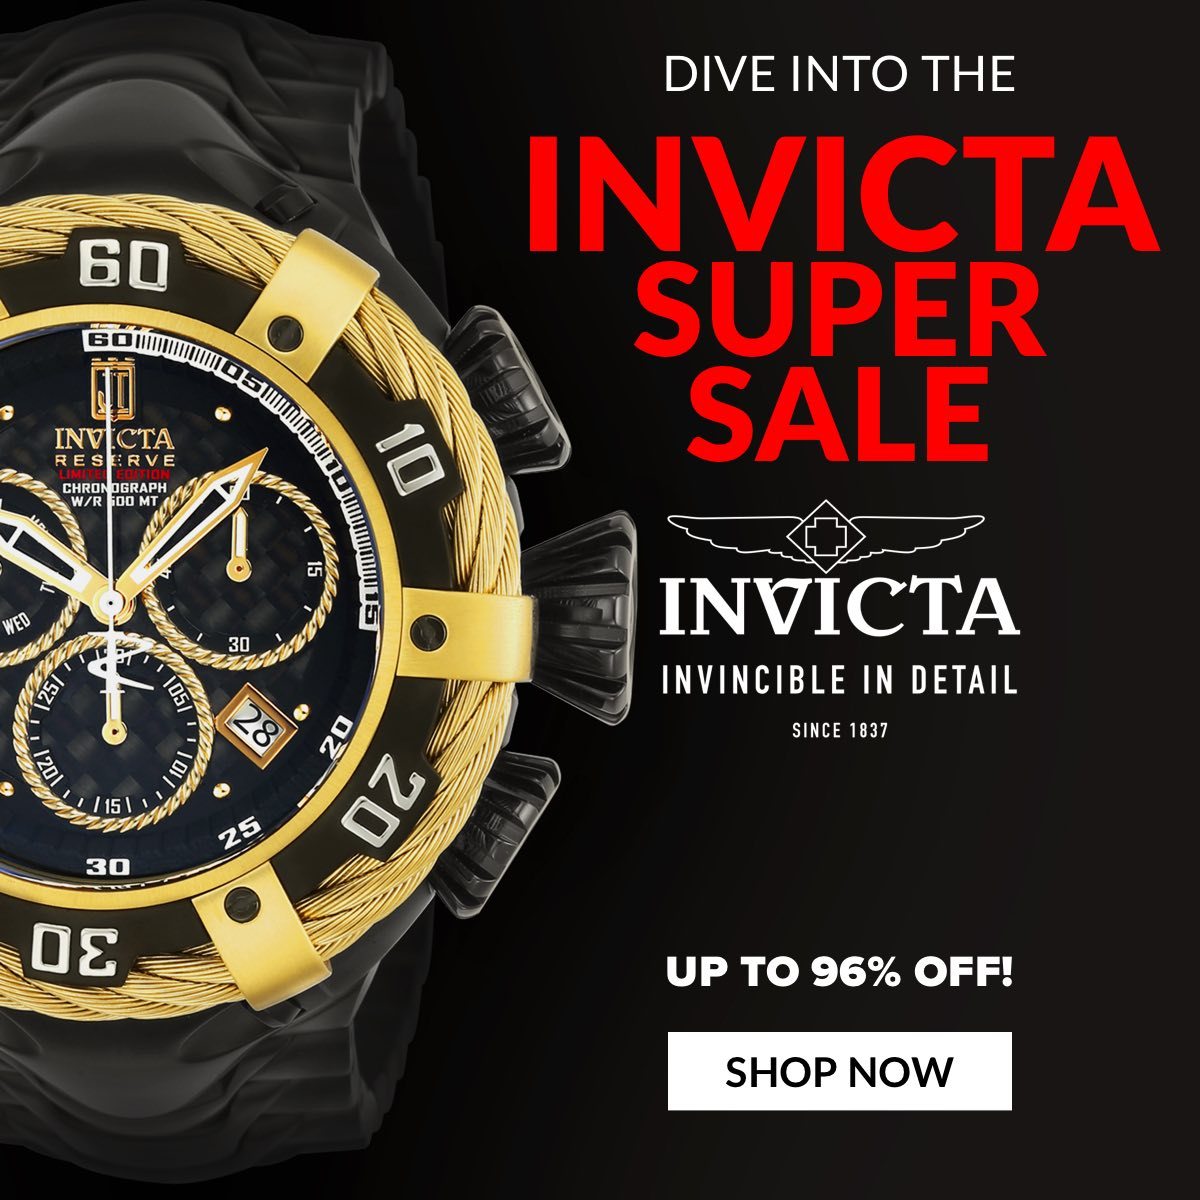 Dive into the INVICTA SUPER SALE Up to 96% off!